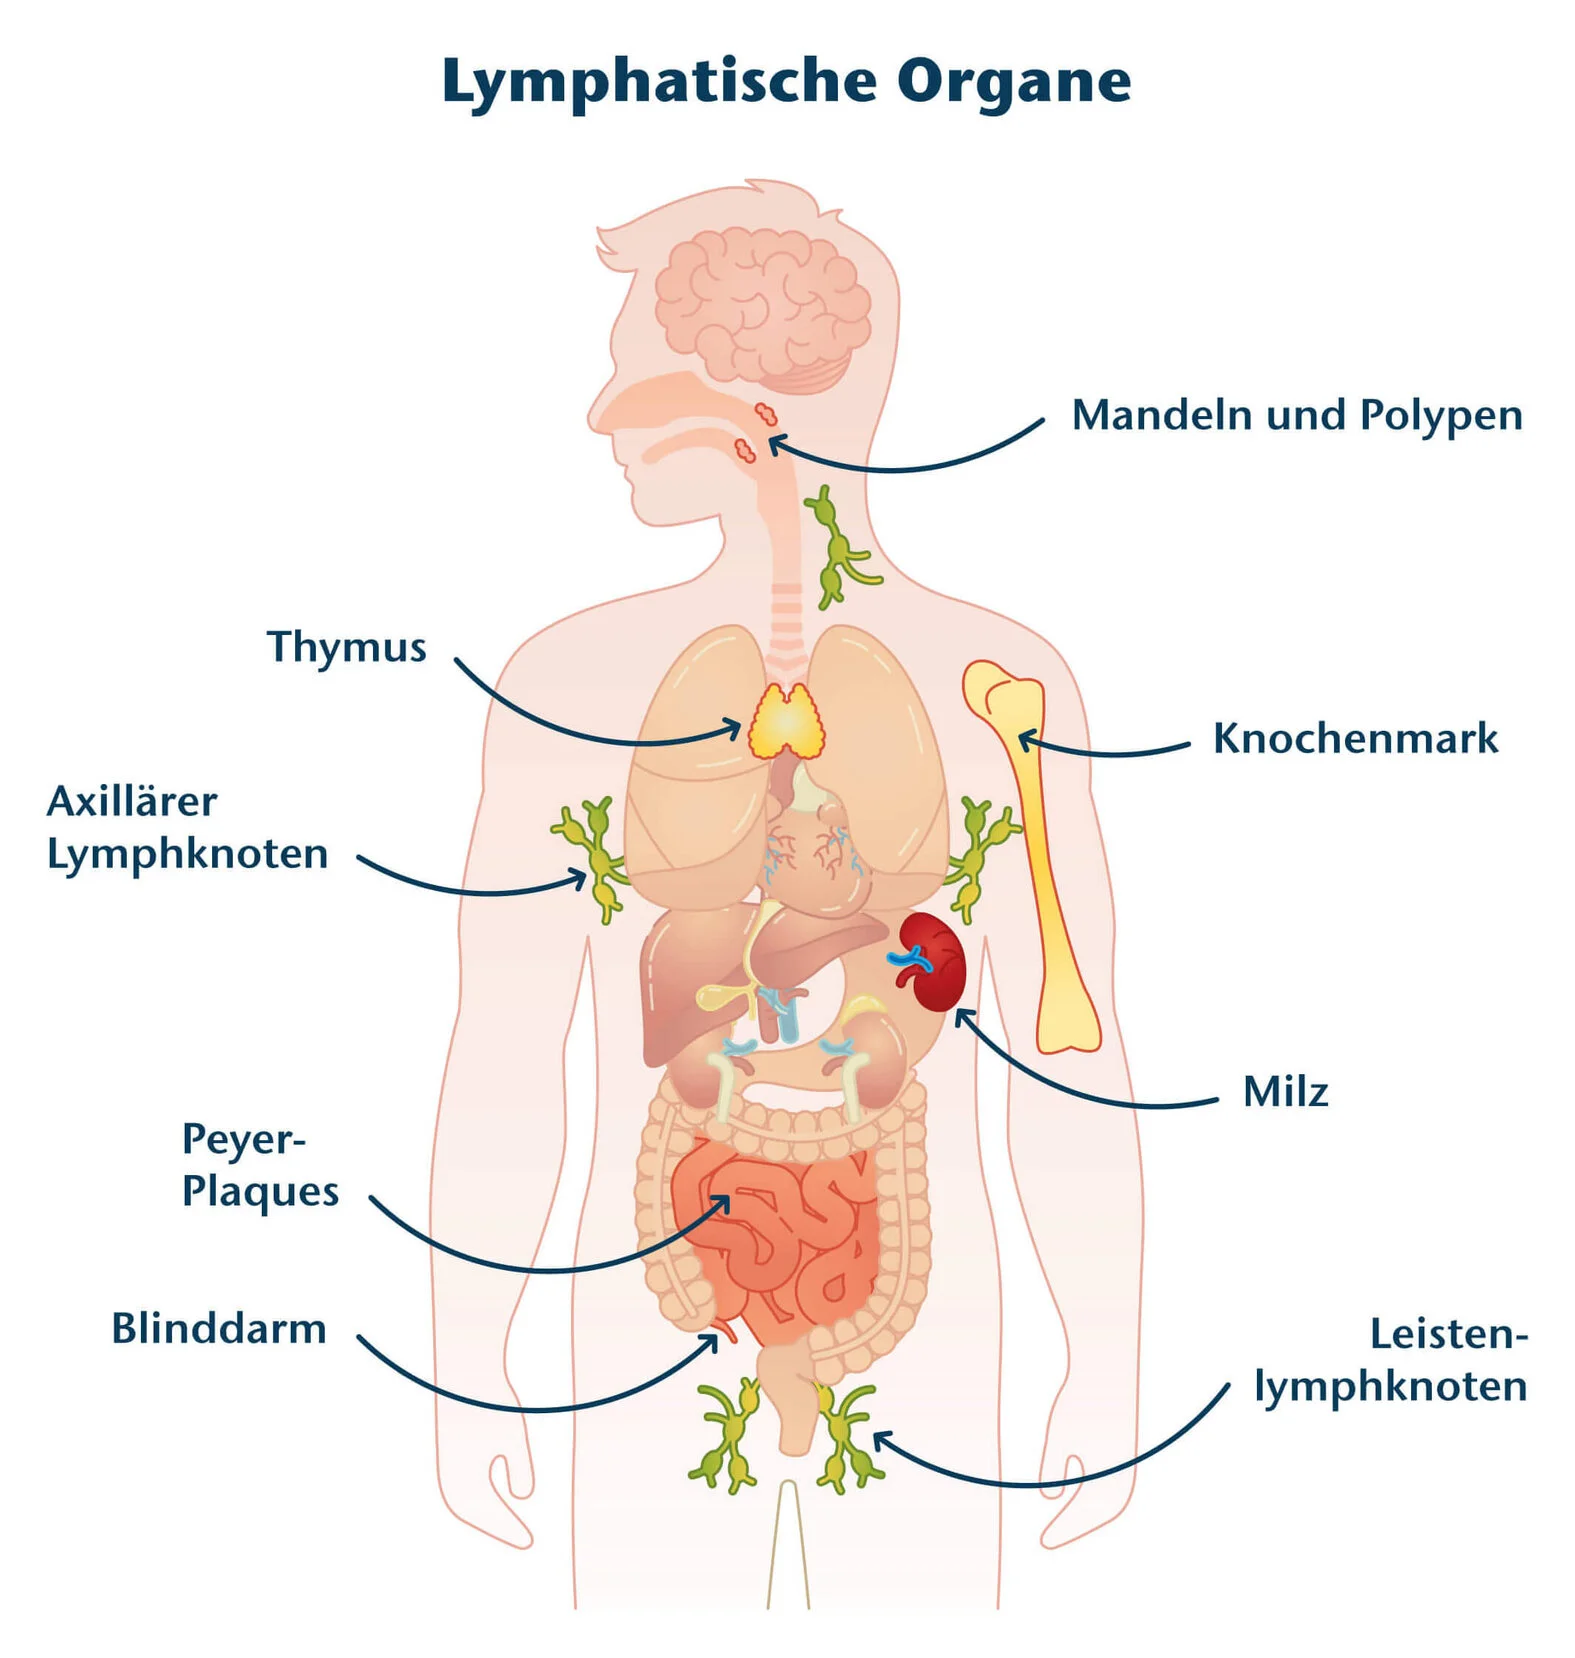 Lymphathische Organe: Schematische Darstellung